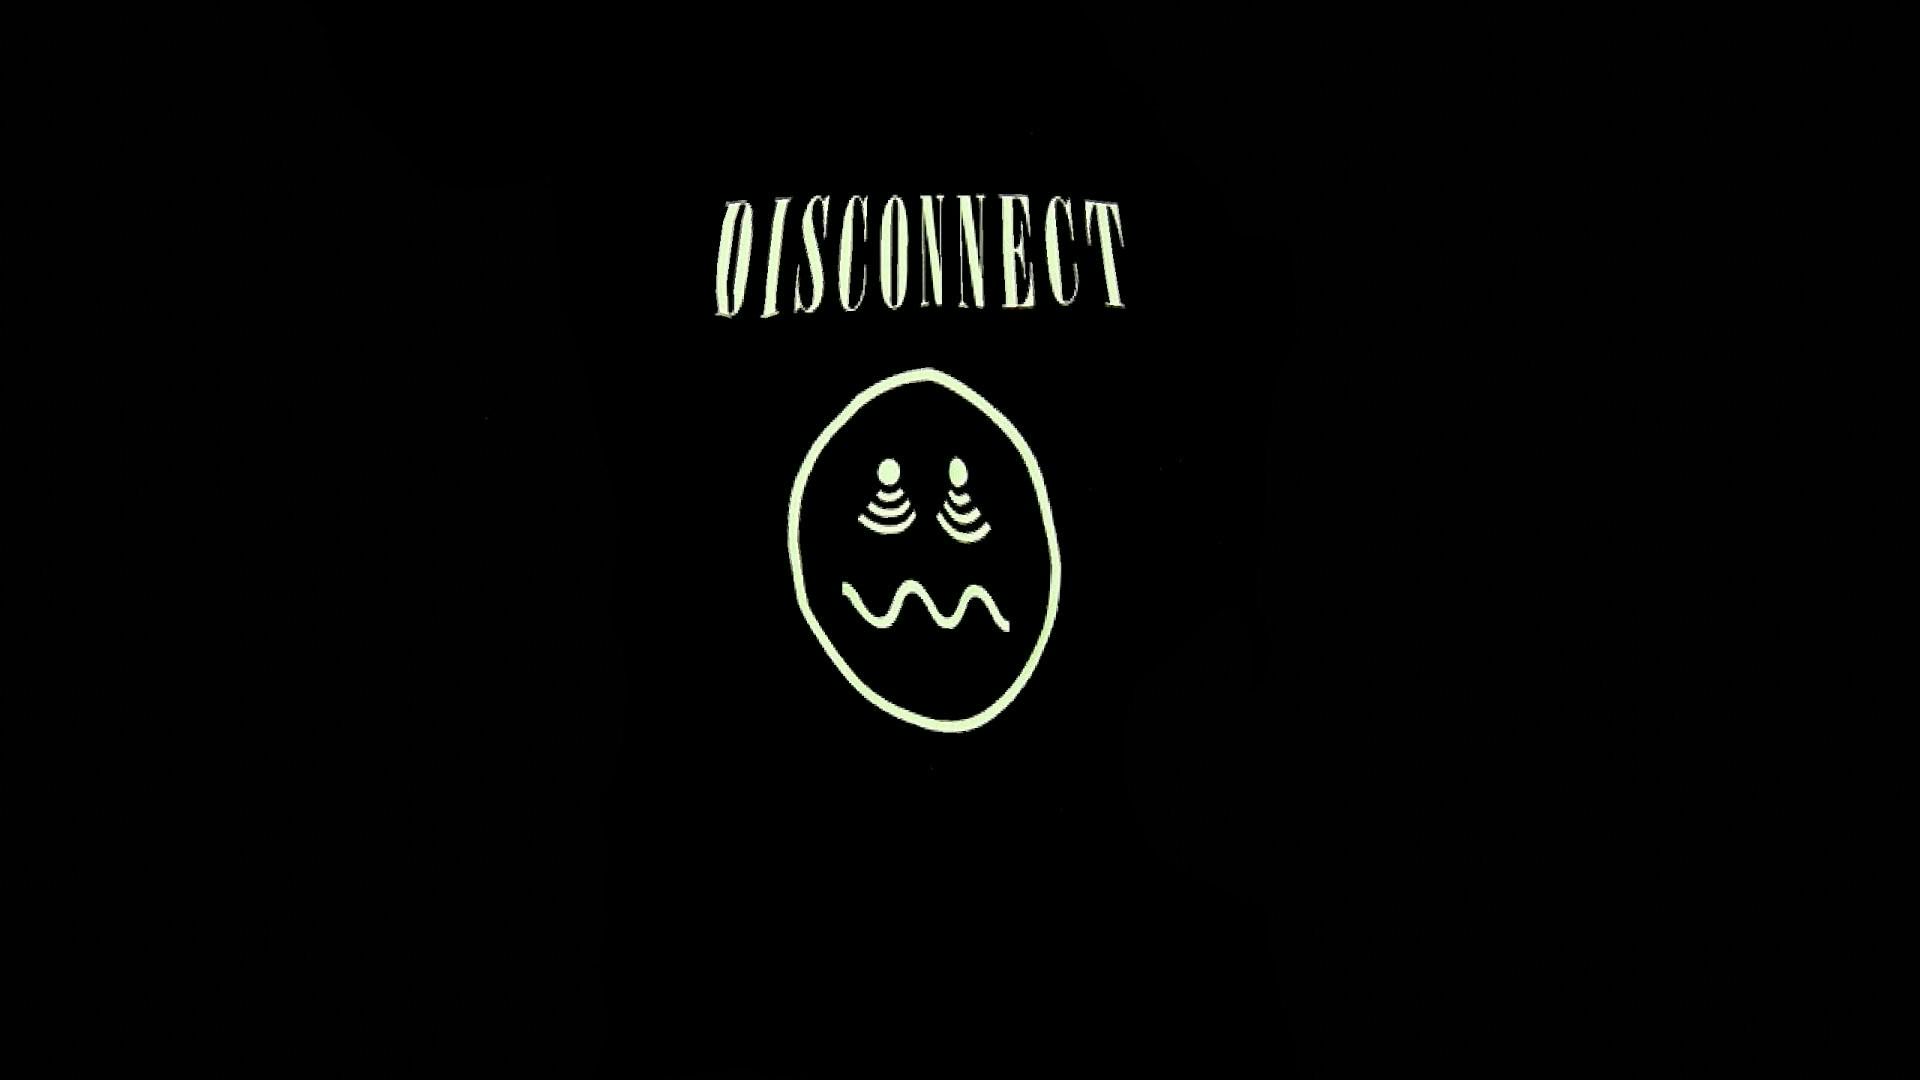 Ett förvrängt t-shirt-tryck med en "disconnectad" smiley.